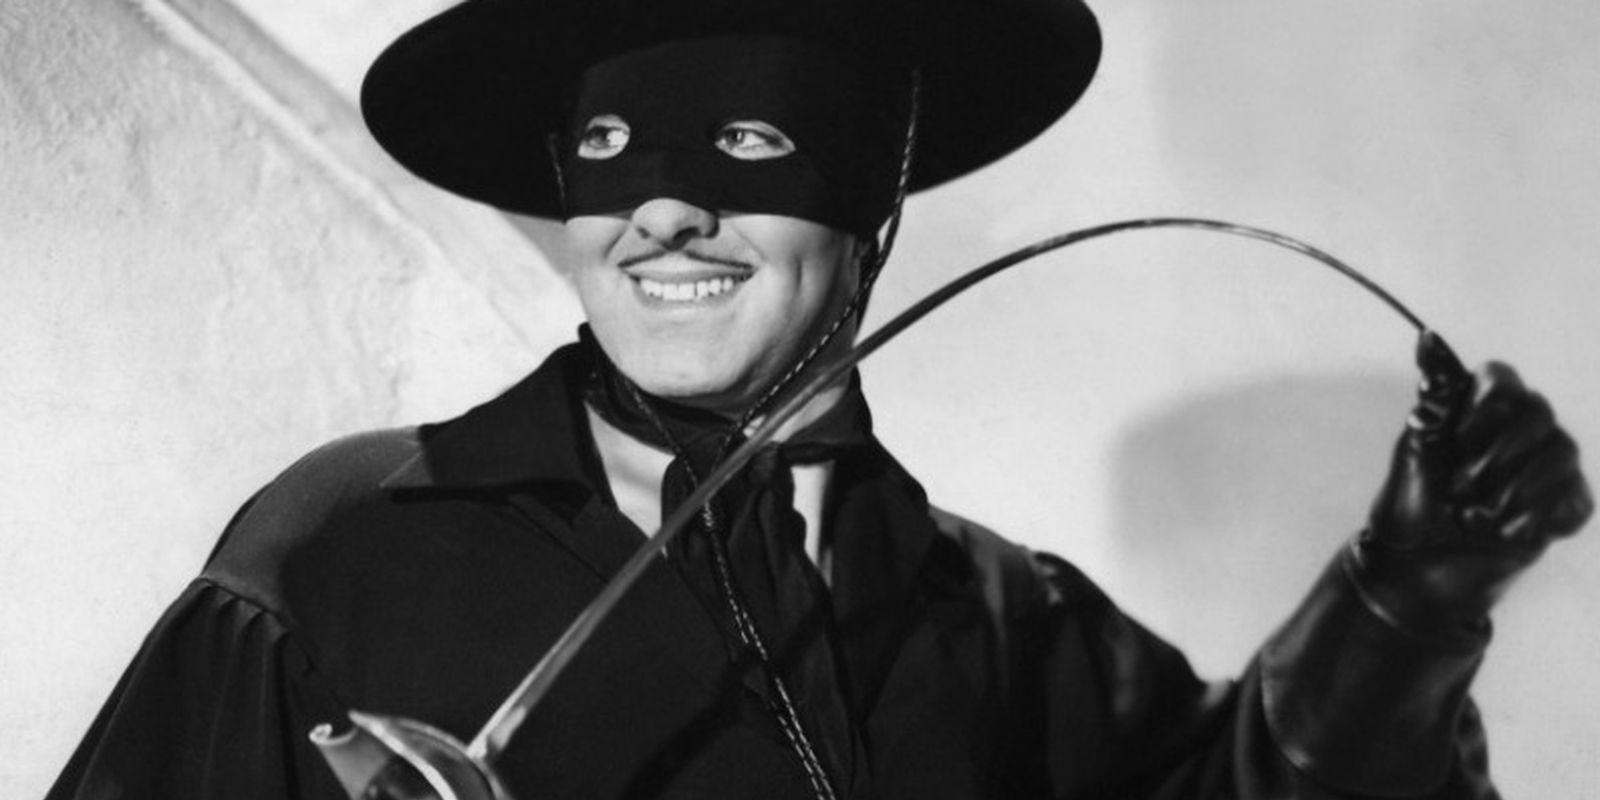 Zorro as played by Douglas Fairbanks